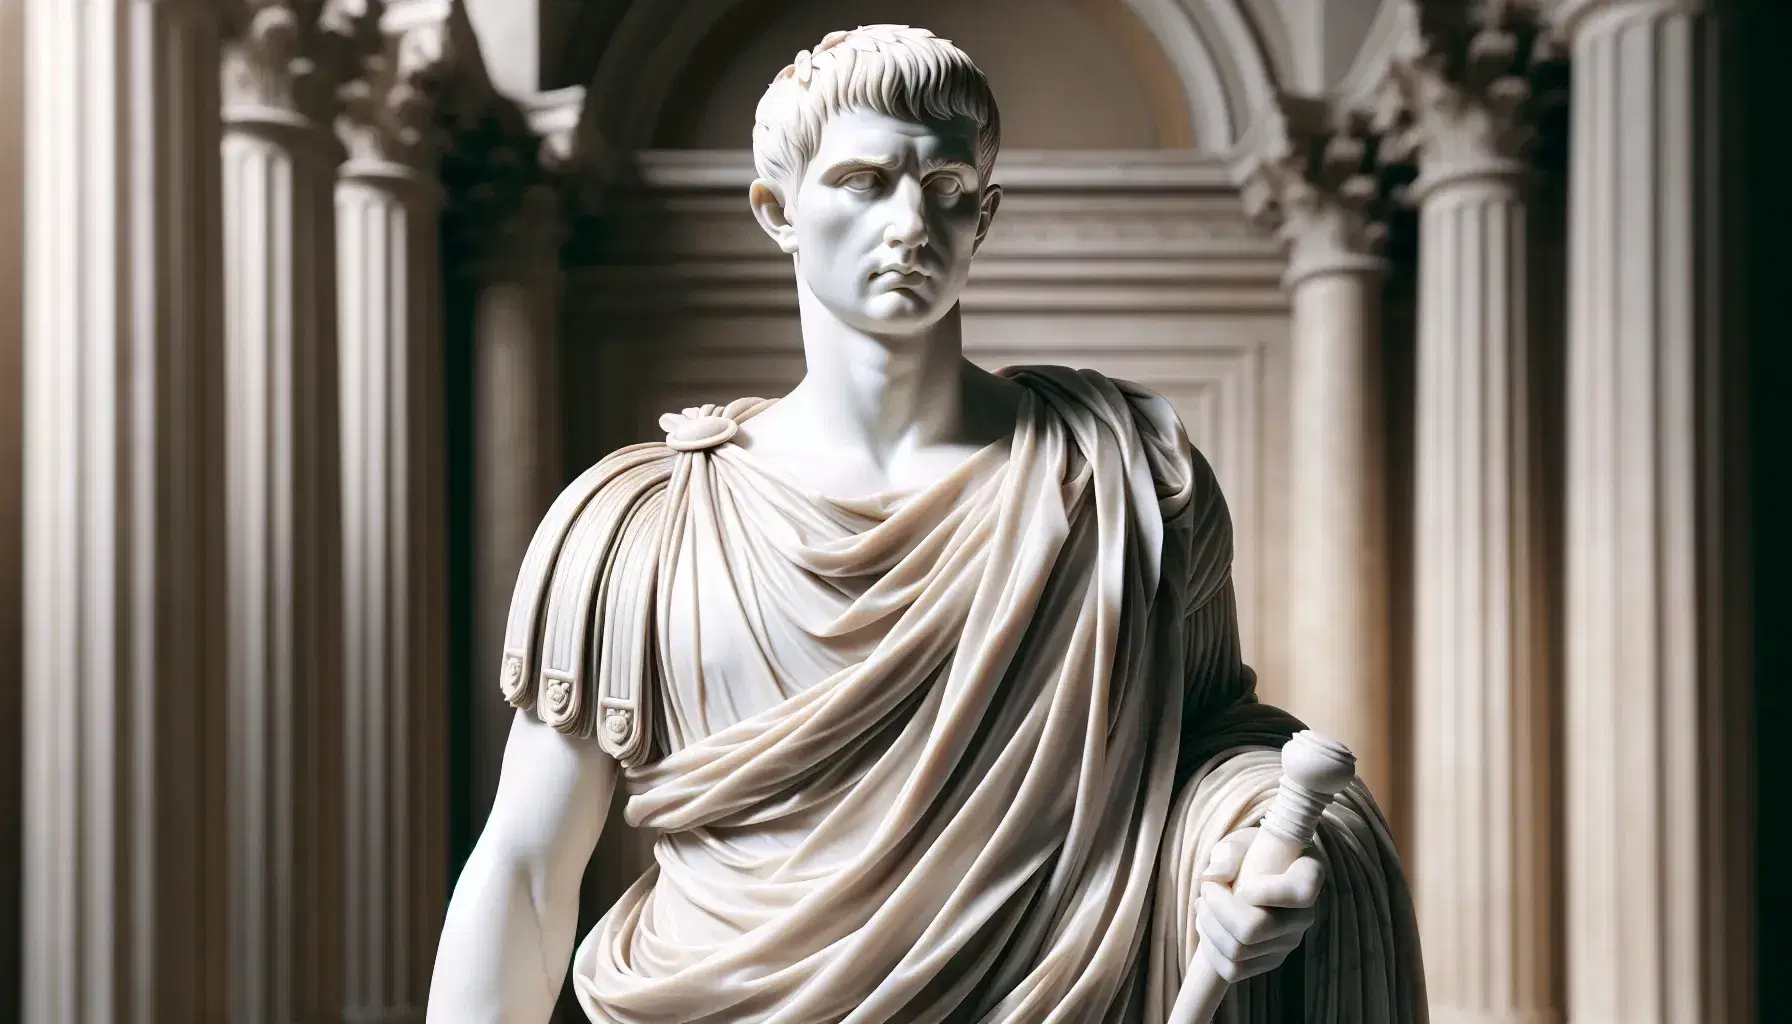 Statua in marmo bianco di figura maschile in stile romano, con toga e scroll, che richiama Giulio Cesare, su sfondo di colonne.